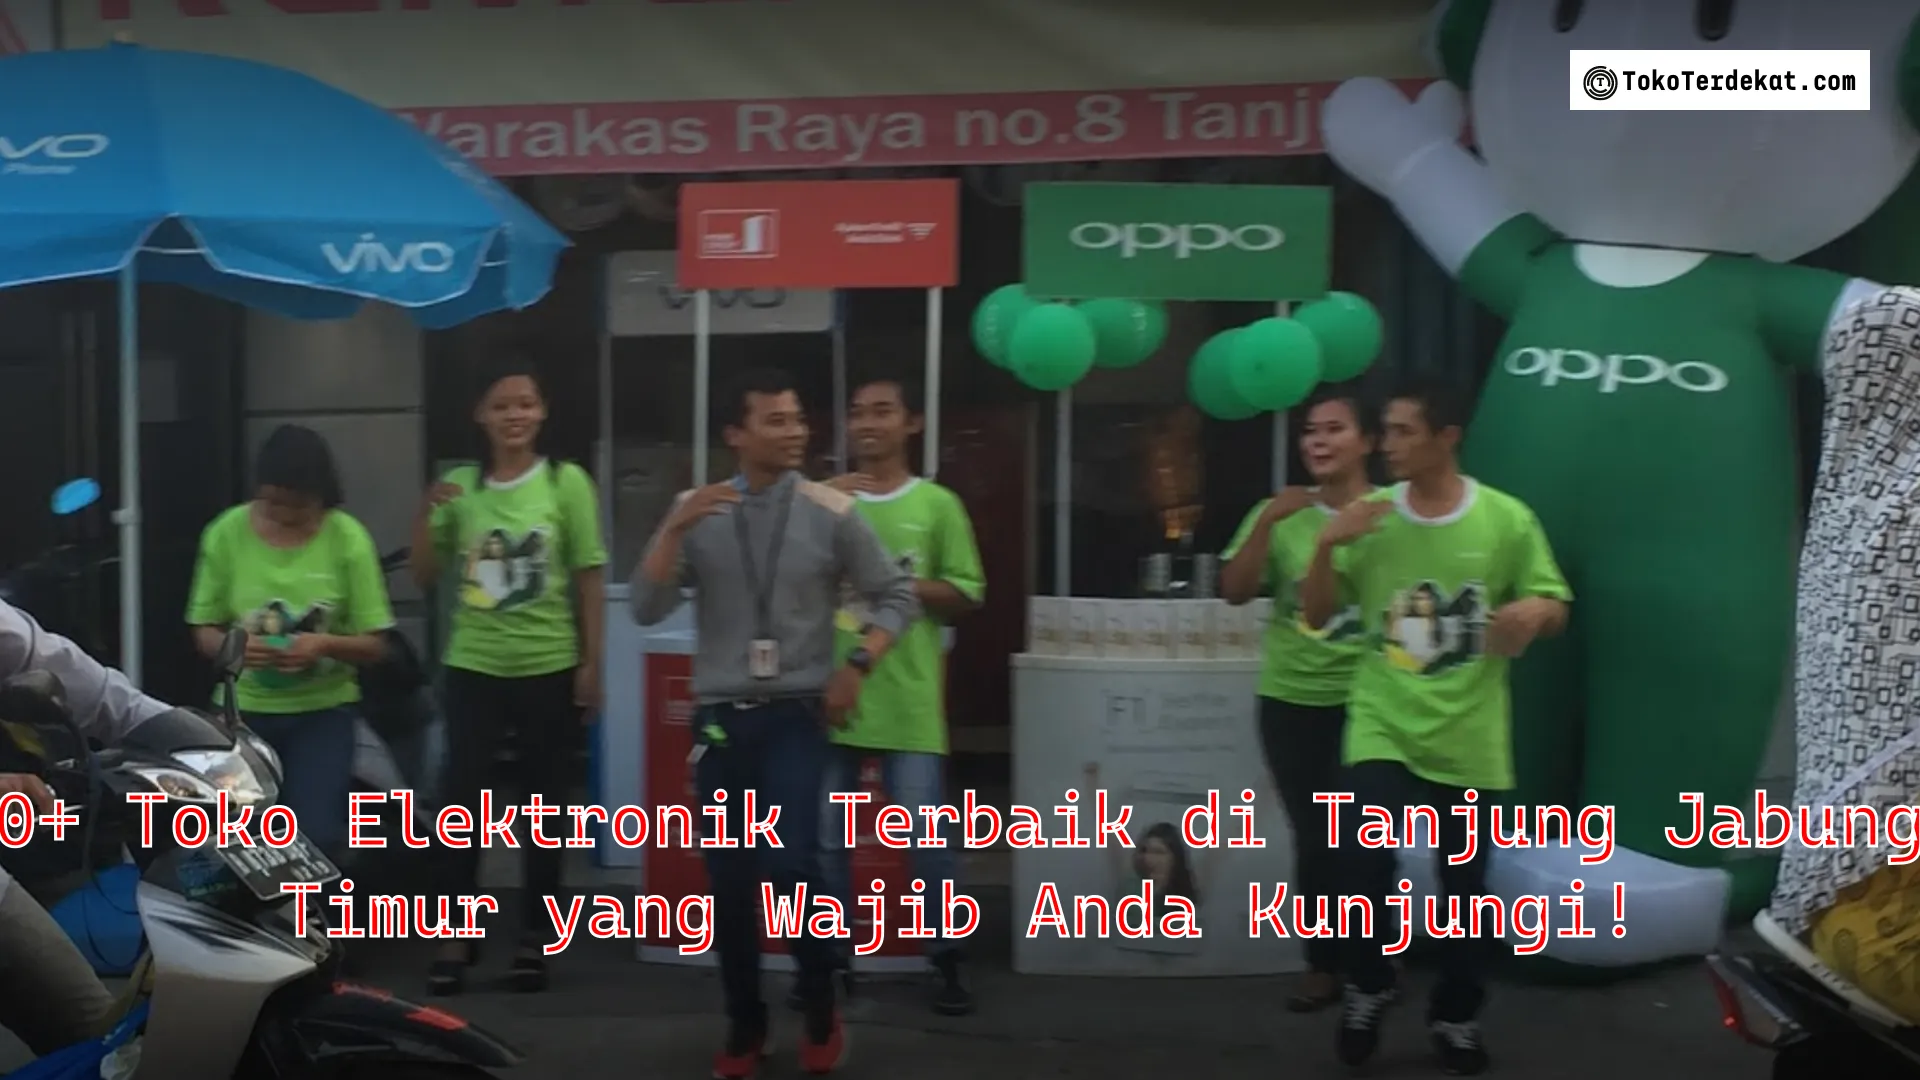 10+ Toko Elektronik Terbaik di Tanjung Jabung Timur yang Wajib Anda Kunjungi!